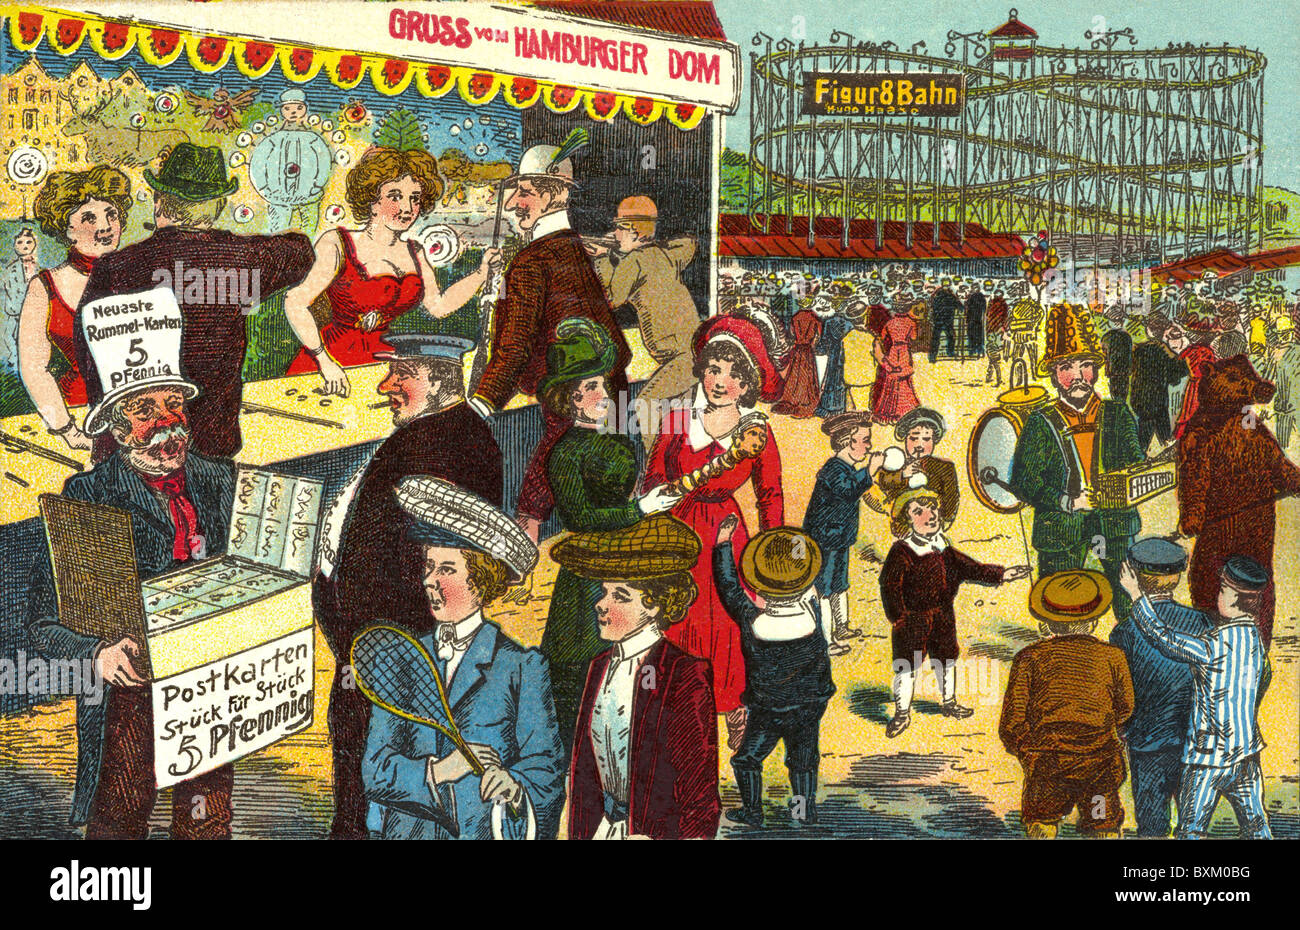 Festlichkeiten, Messe, Hamburger Dom, Messegelände, Besucher, Ansichtskarte, Lithographie, Deutschland, um 1910, zusätzliche-Rechte-Clearences-nicht vorhanden Stockfoto